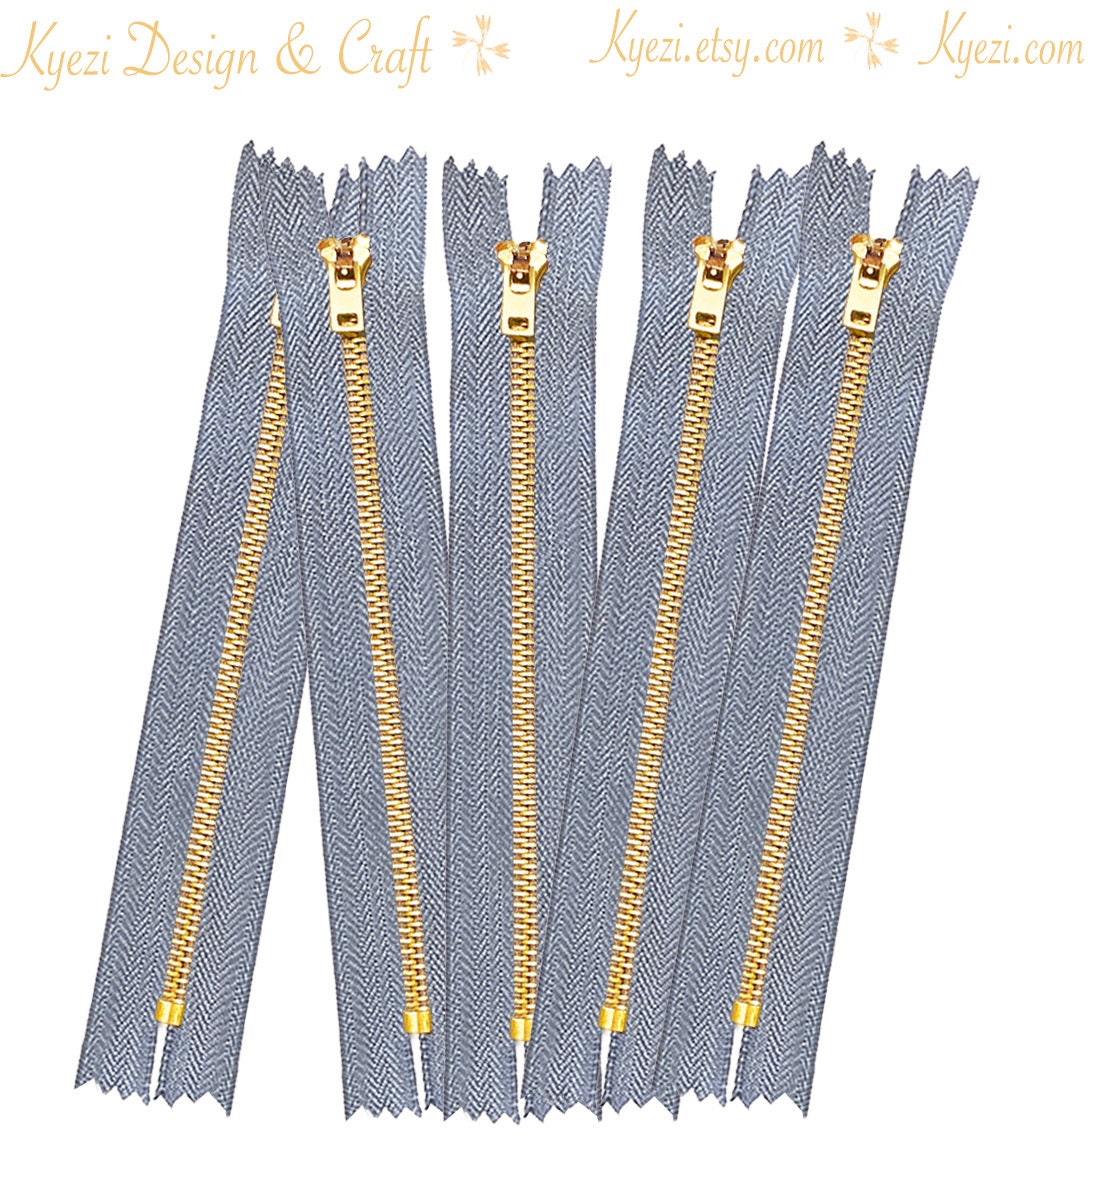 zip manish 4.5 Brass Zip Jeans Metal Zippers, Size/Dimension: 5